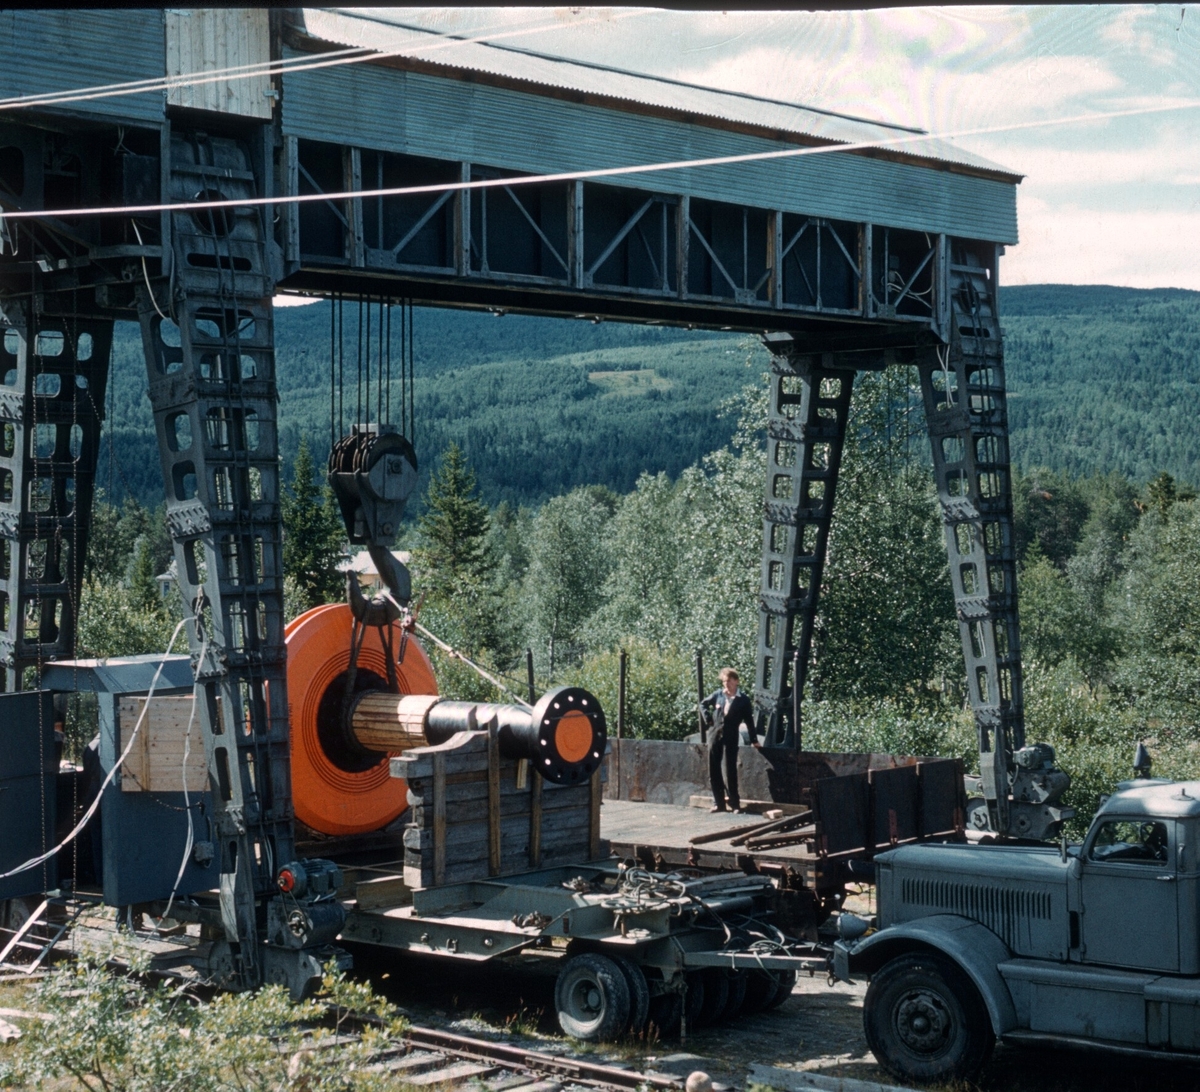 Transport av Generator frå Sangelien.
bilde er tatt av Thorbjørn Pedersen.